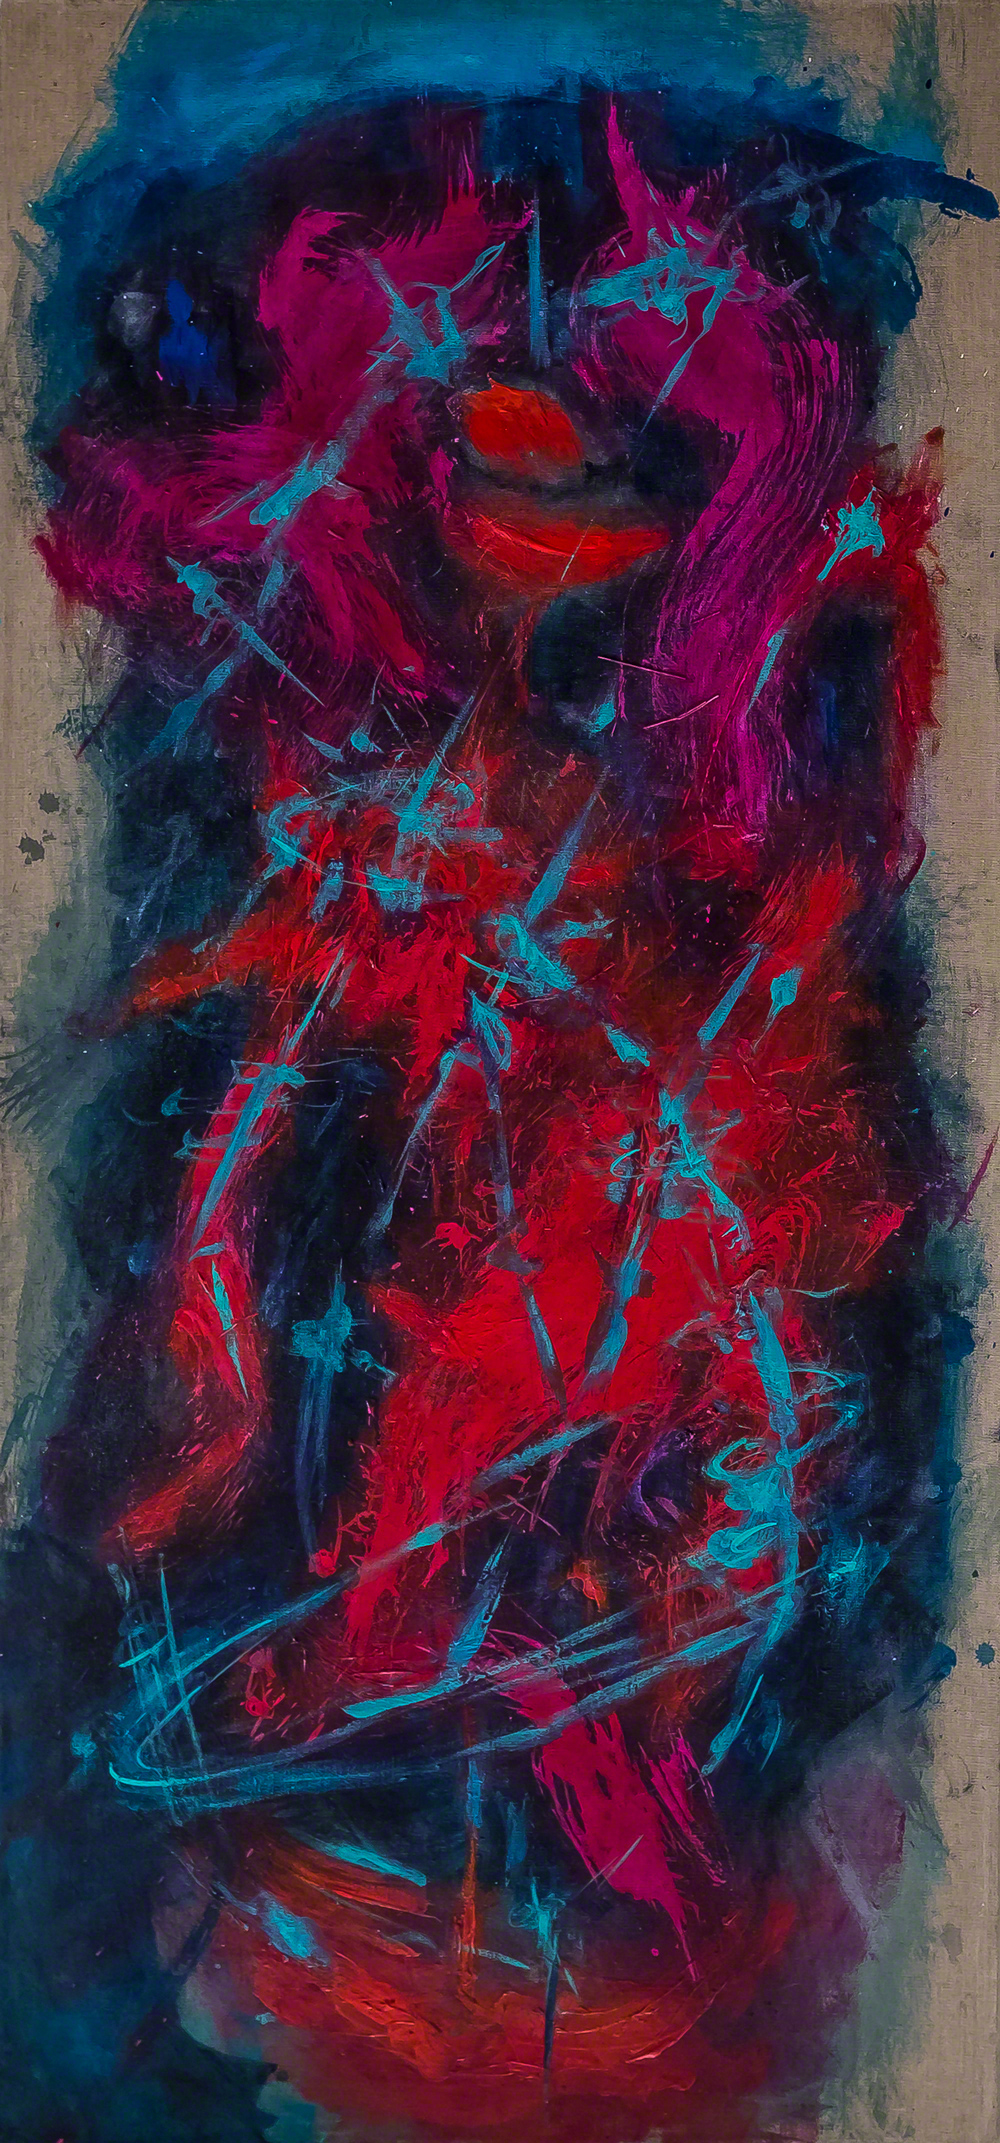 ORBITING - 70 x 150 cm, acrylic on raw canvas, 2020.